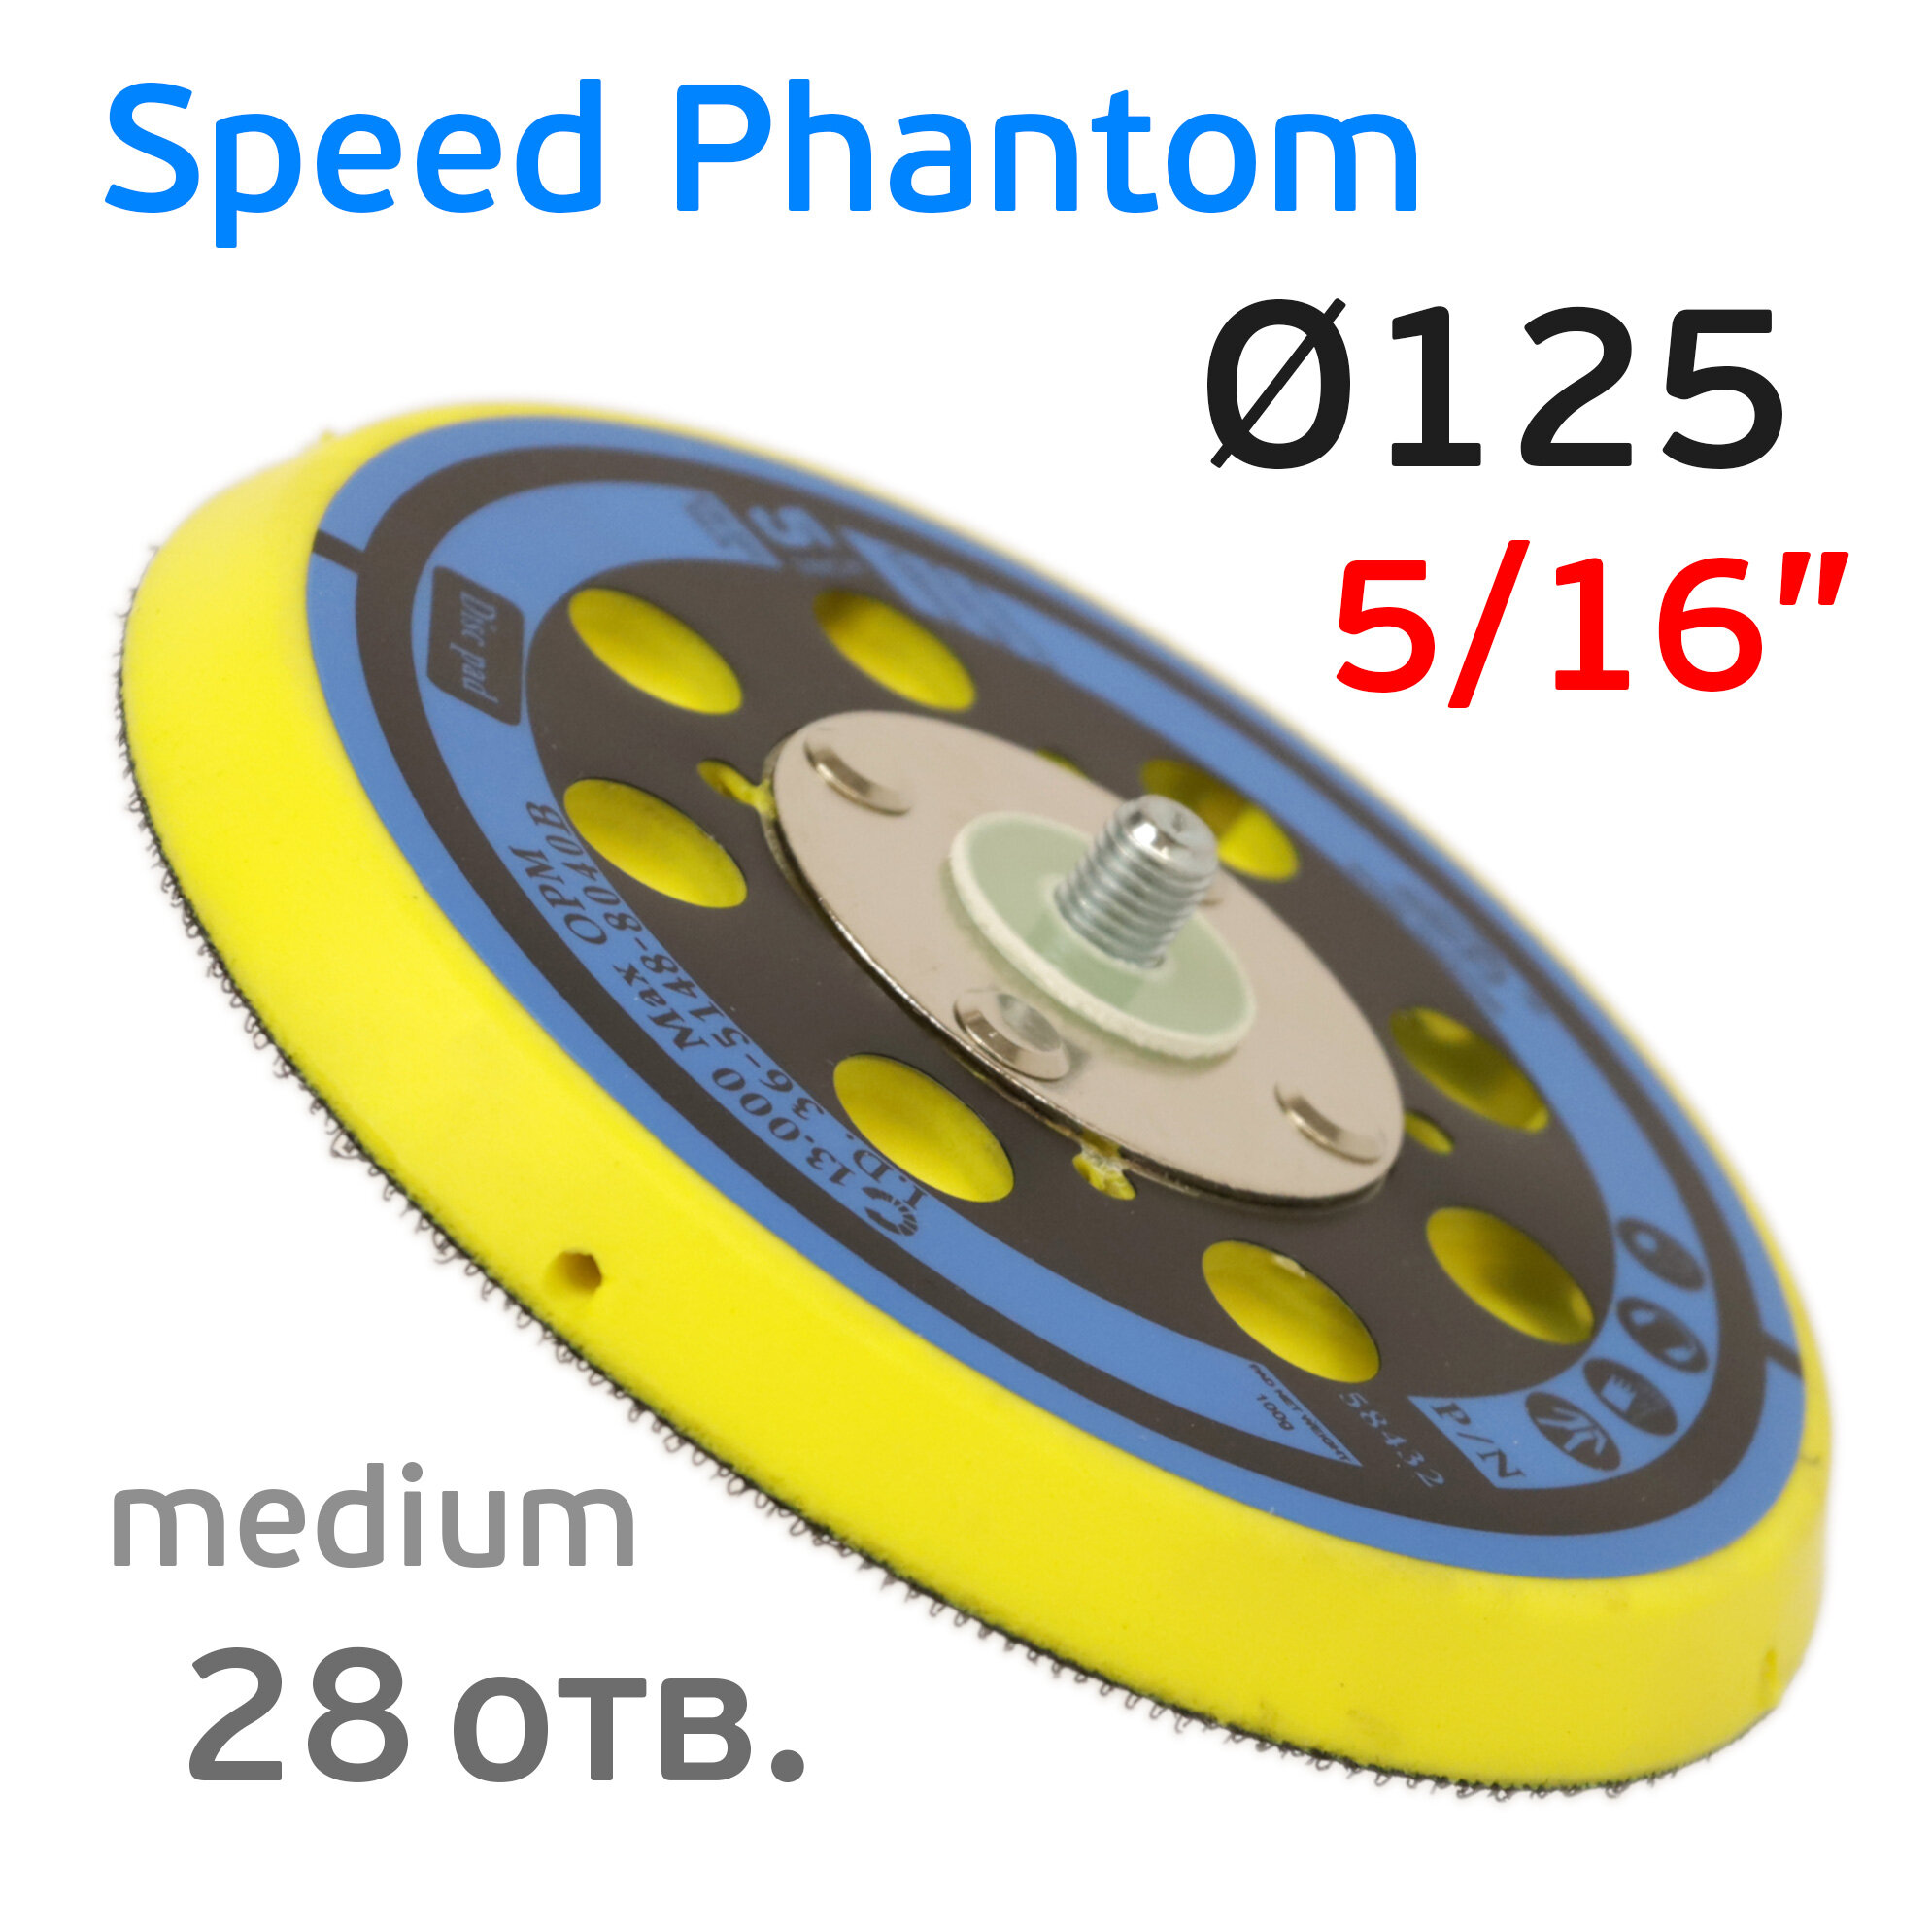 Подошва (125мм, 5/16", 28отв.) Speed Phantom (средняя) для Deros, Ceros, Pros, Schtaer